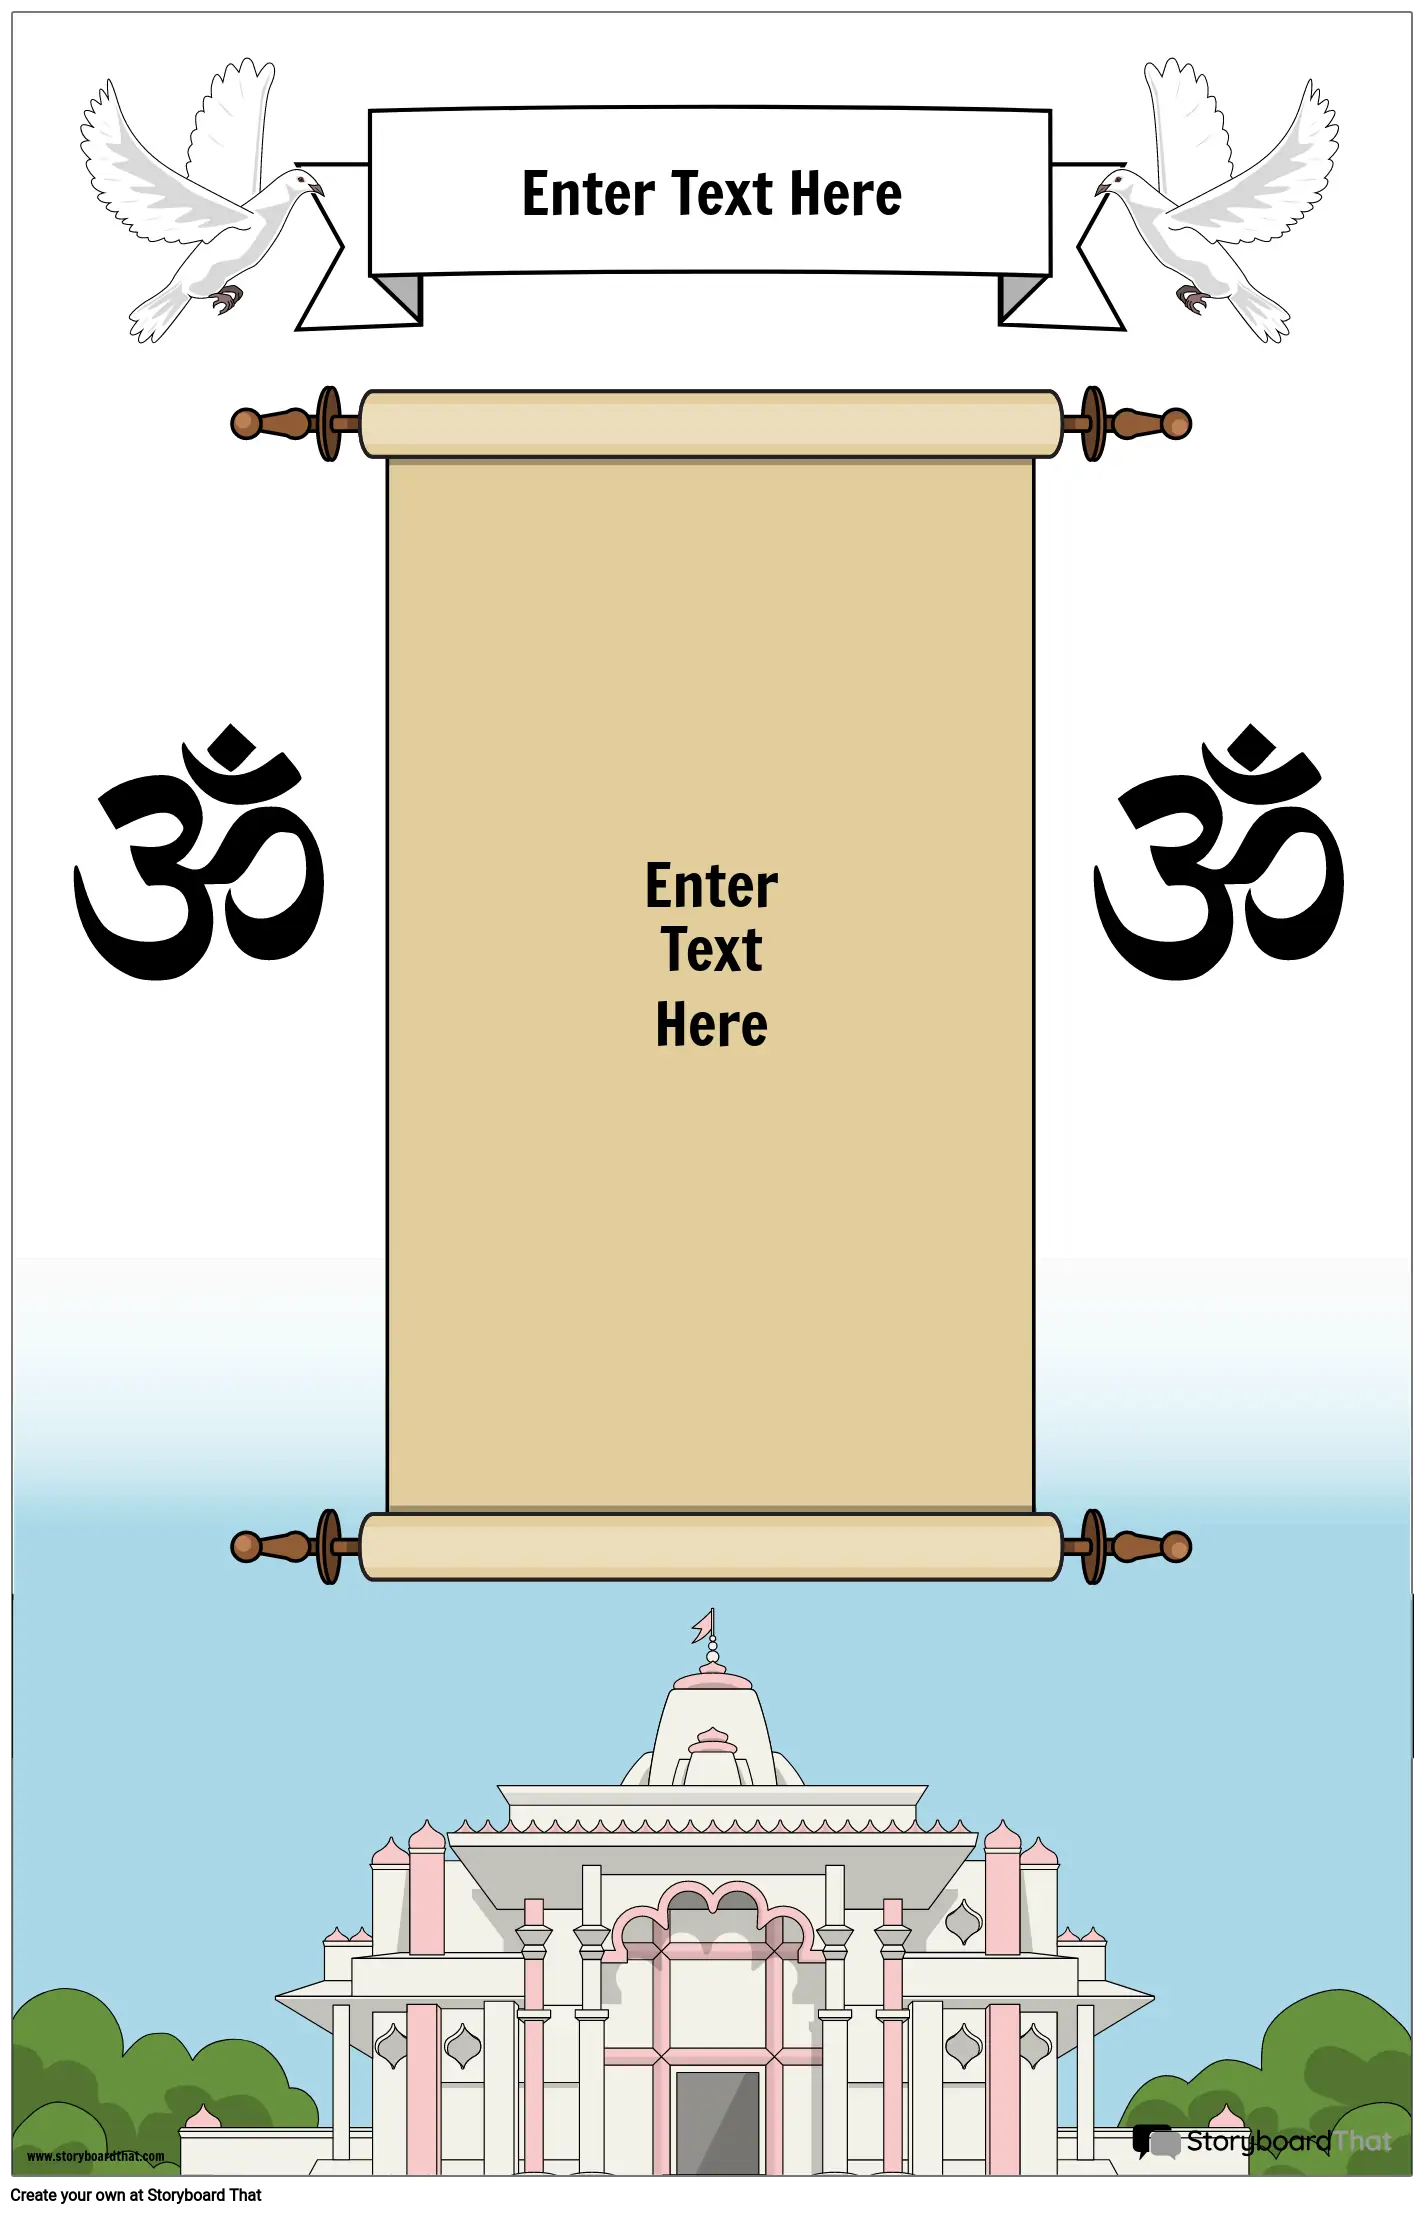 כרזה דתית 10 הינדואיזם